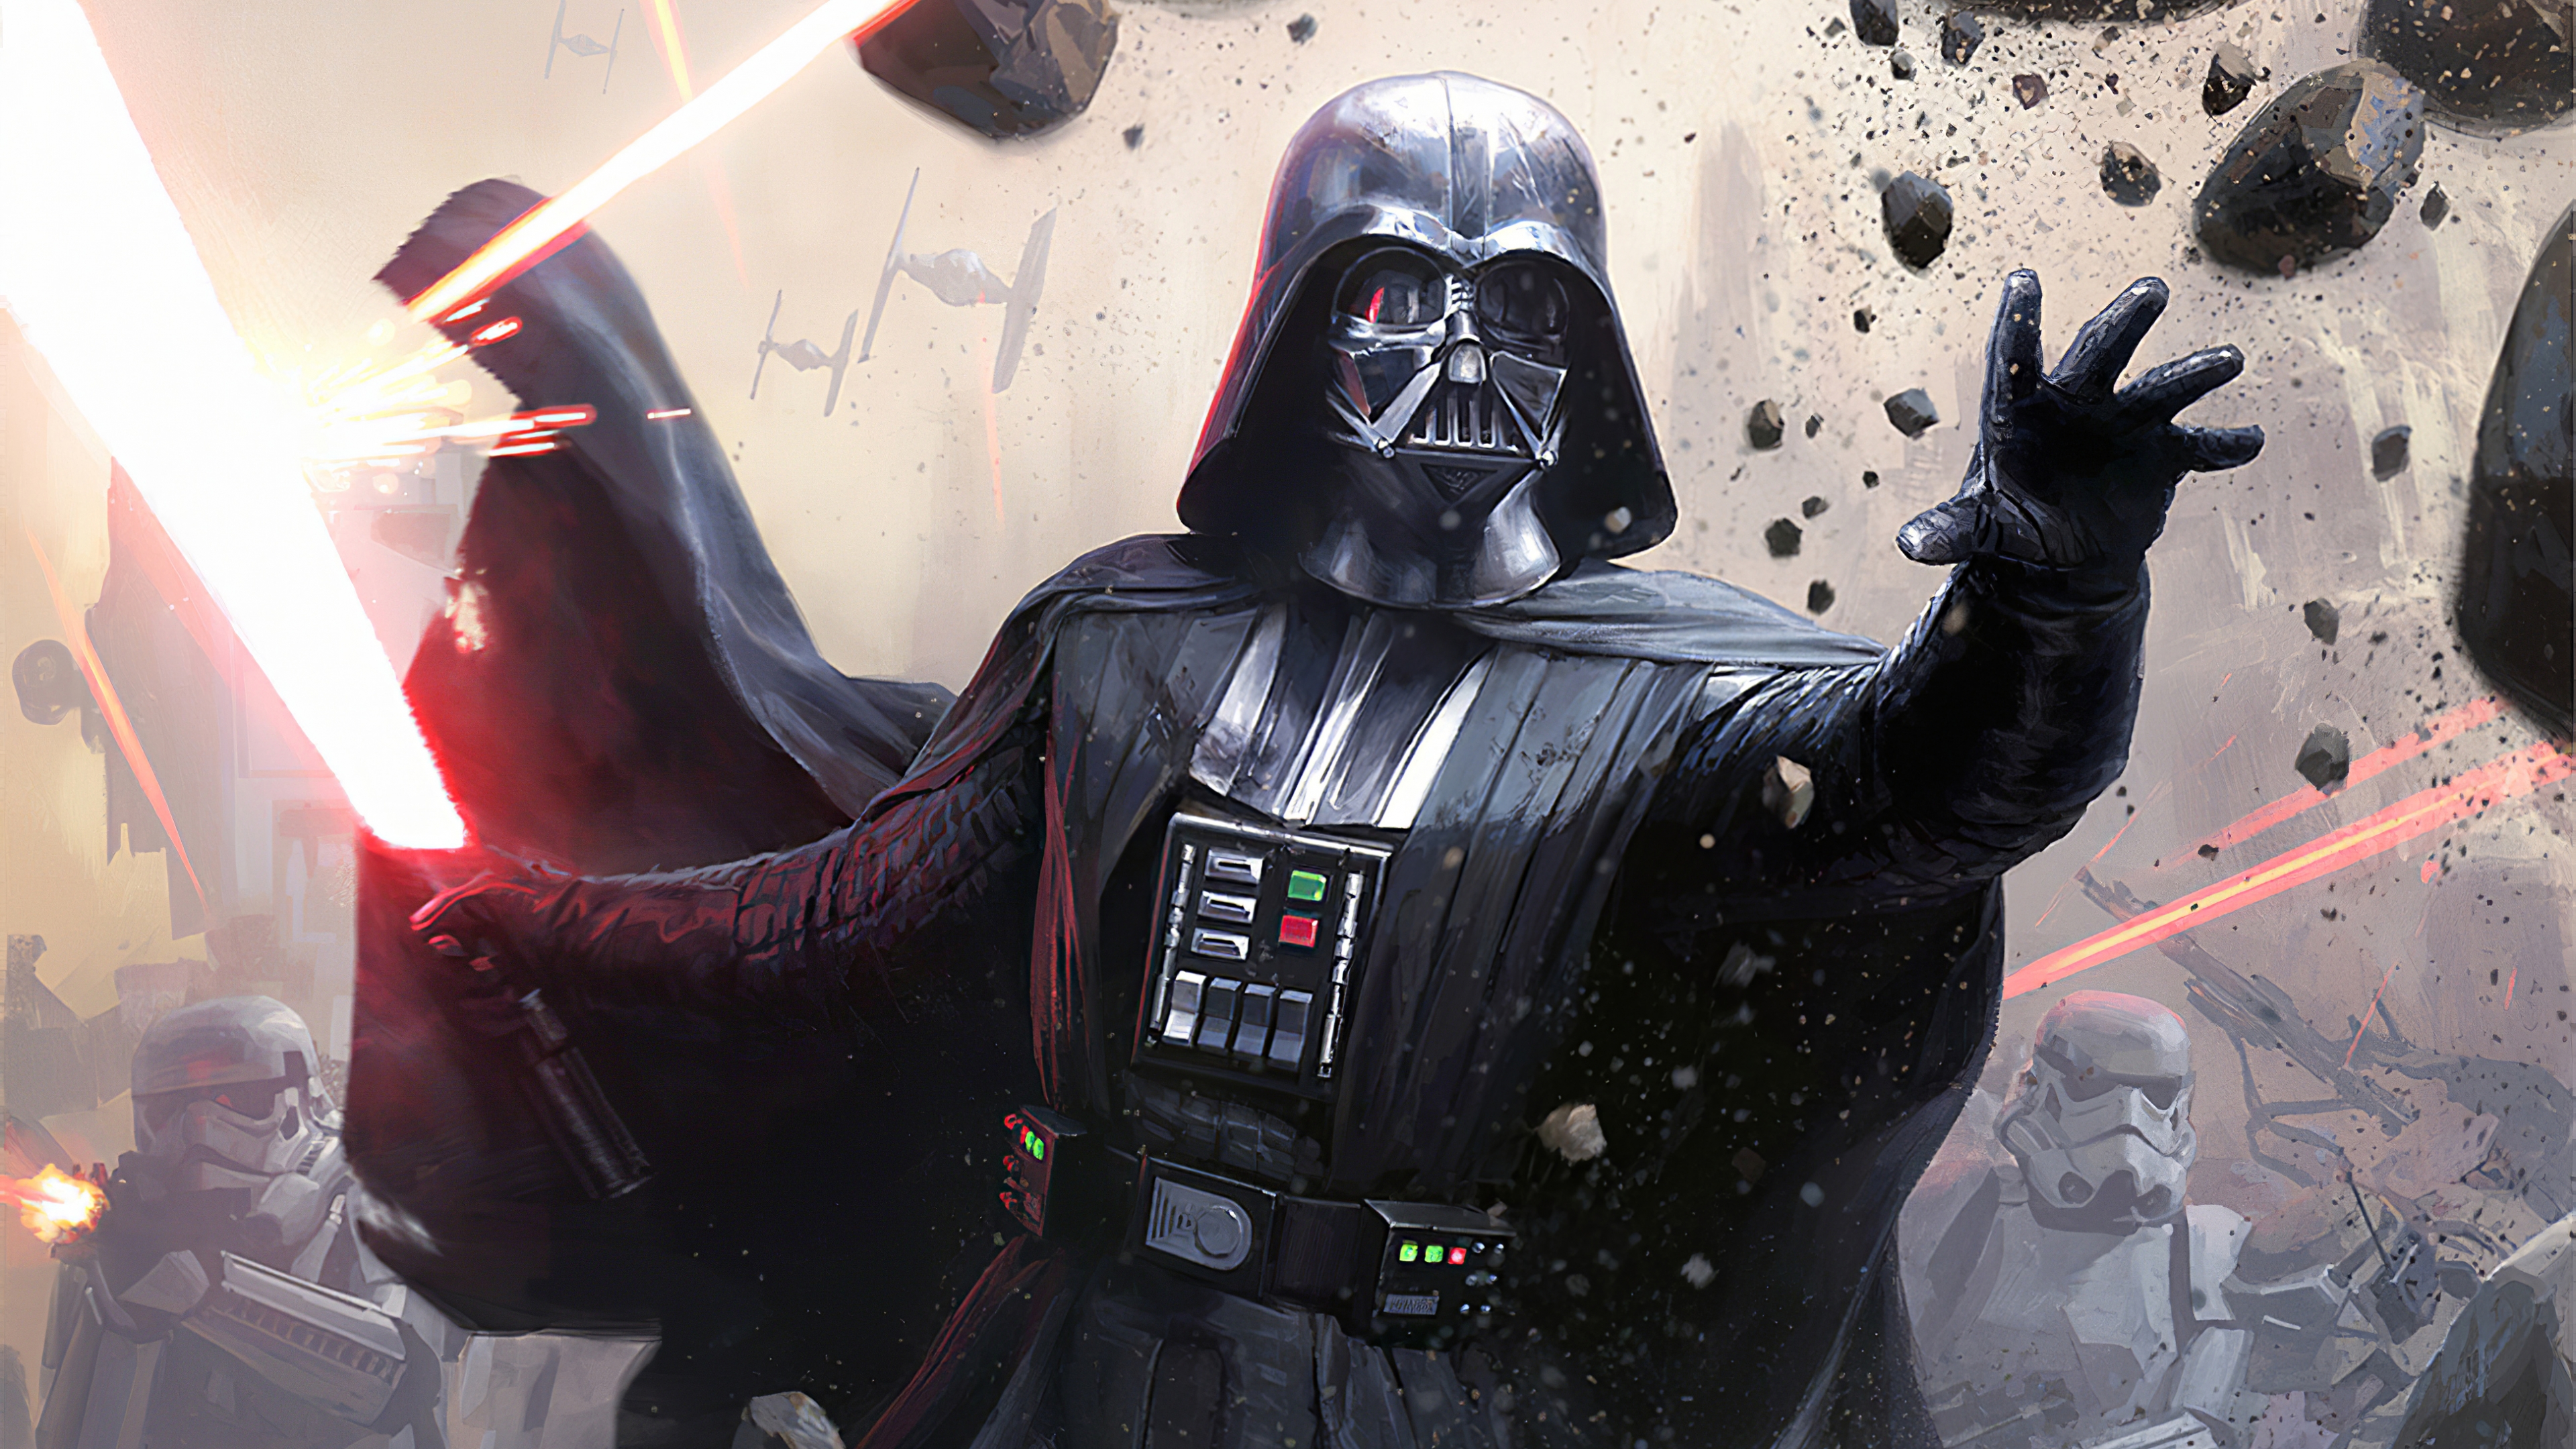 Darth Vader from Star Wars Wallpaper ID:4936